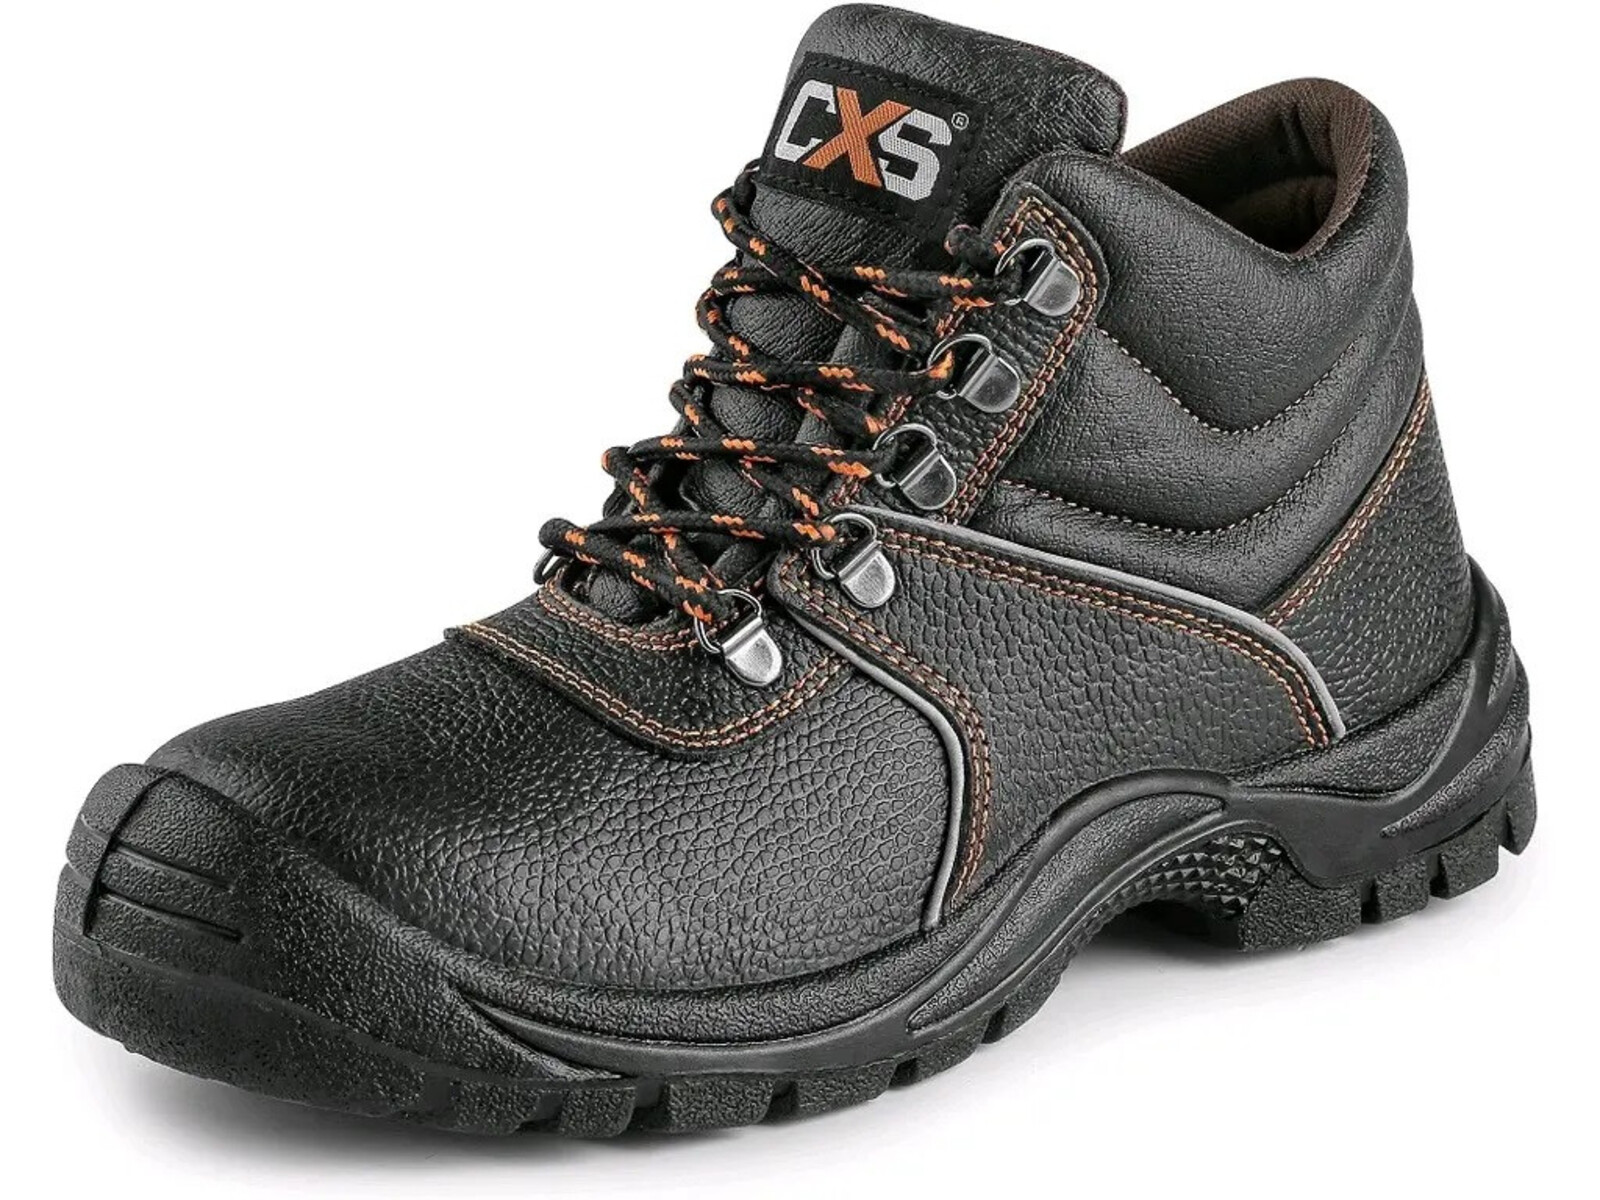 Bezpečnostná členková obuv CXS Stone Marble S3 SRC - veľkosť: 49, farba: čierna/oranžová